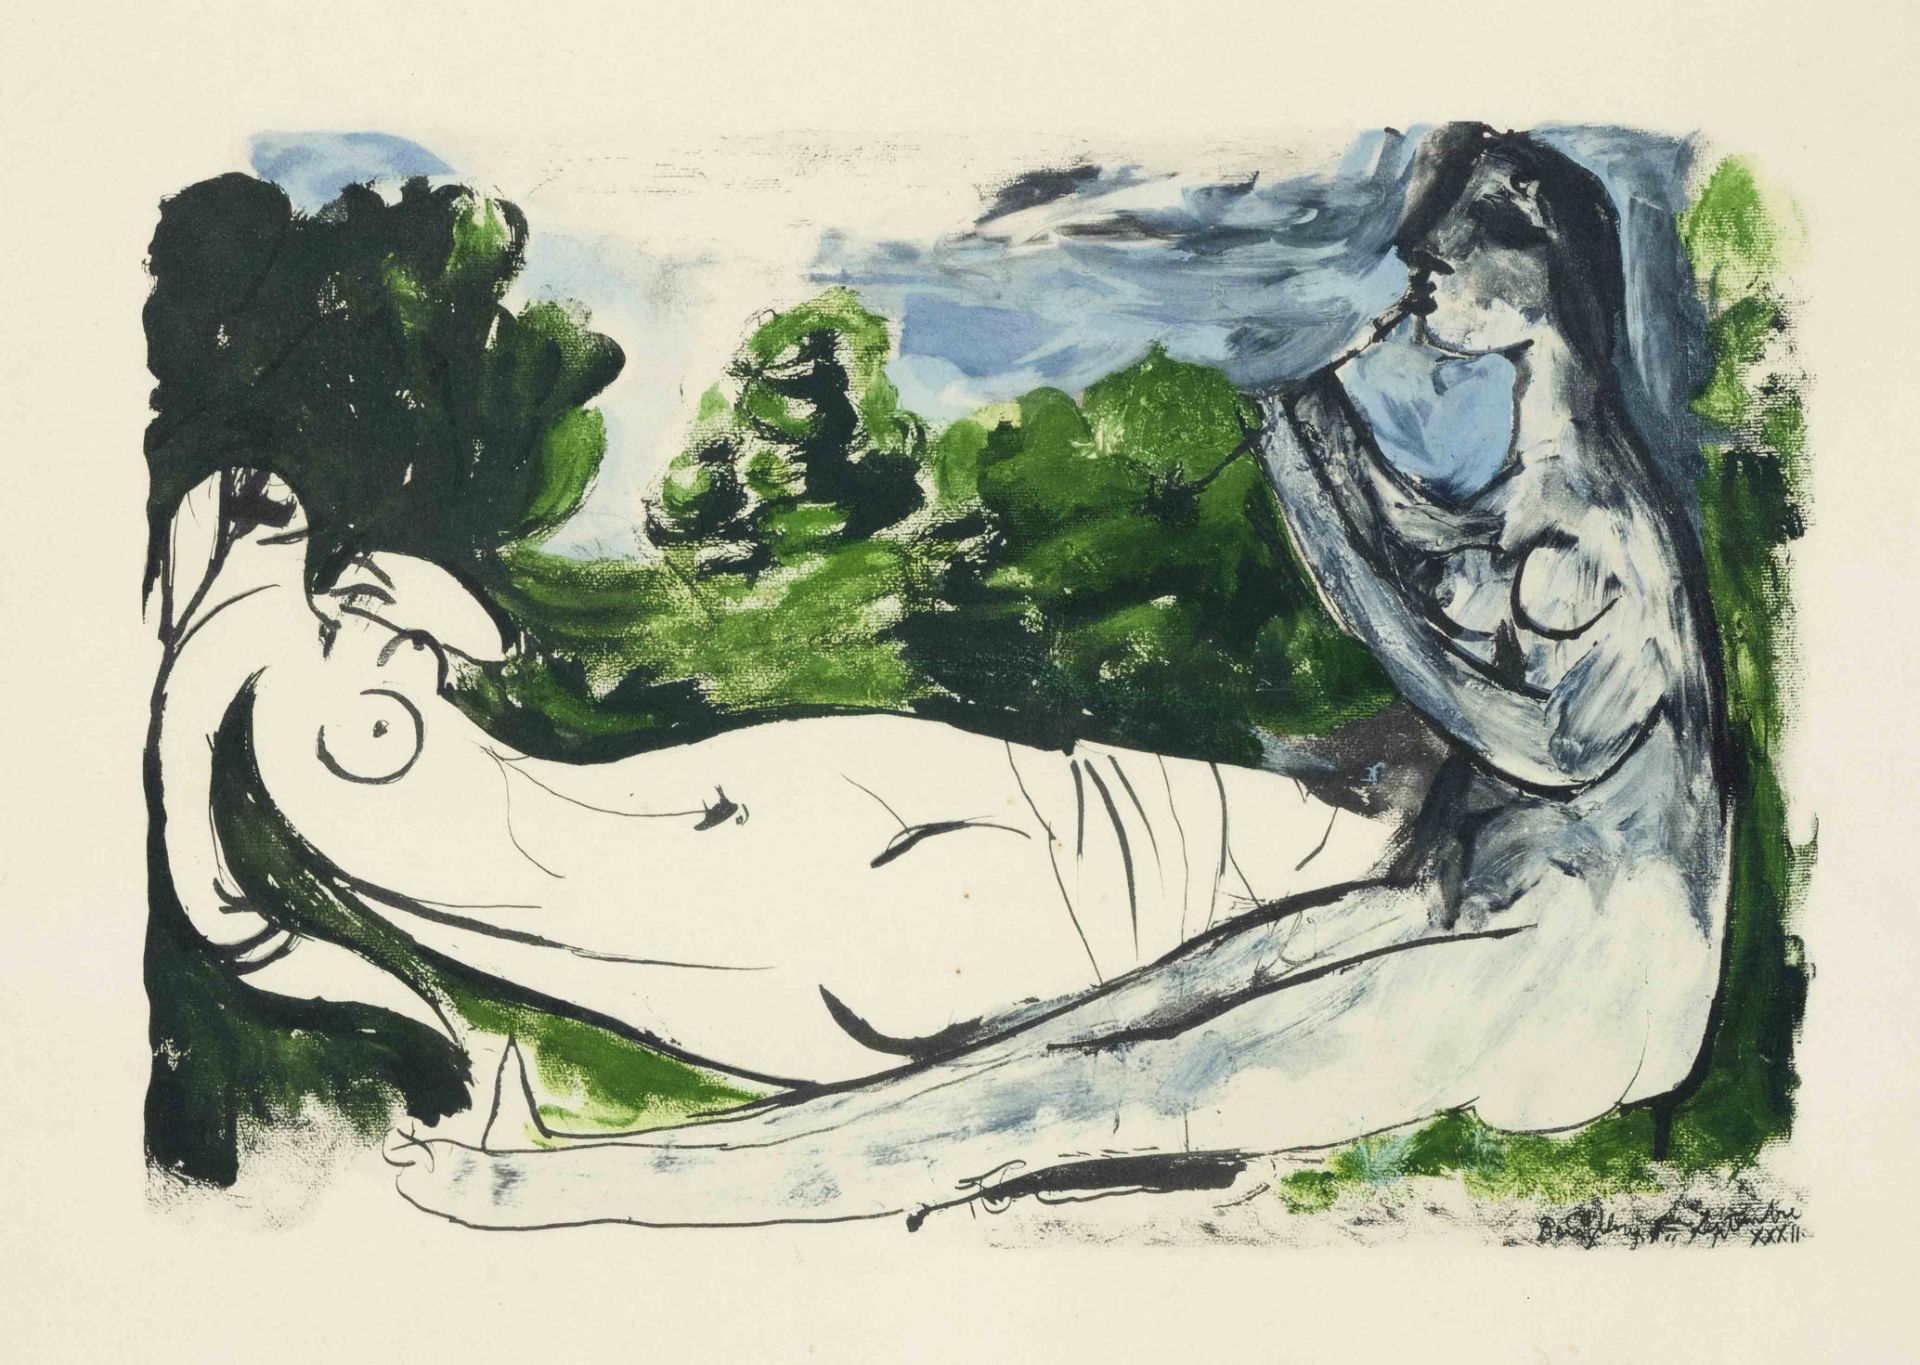 Pablo Picasso (1881-1973), ''Femme nue et joueuse de flûte 1932'', pochoir lithograph, realized 1967